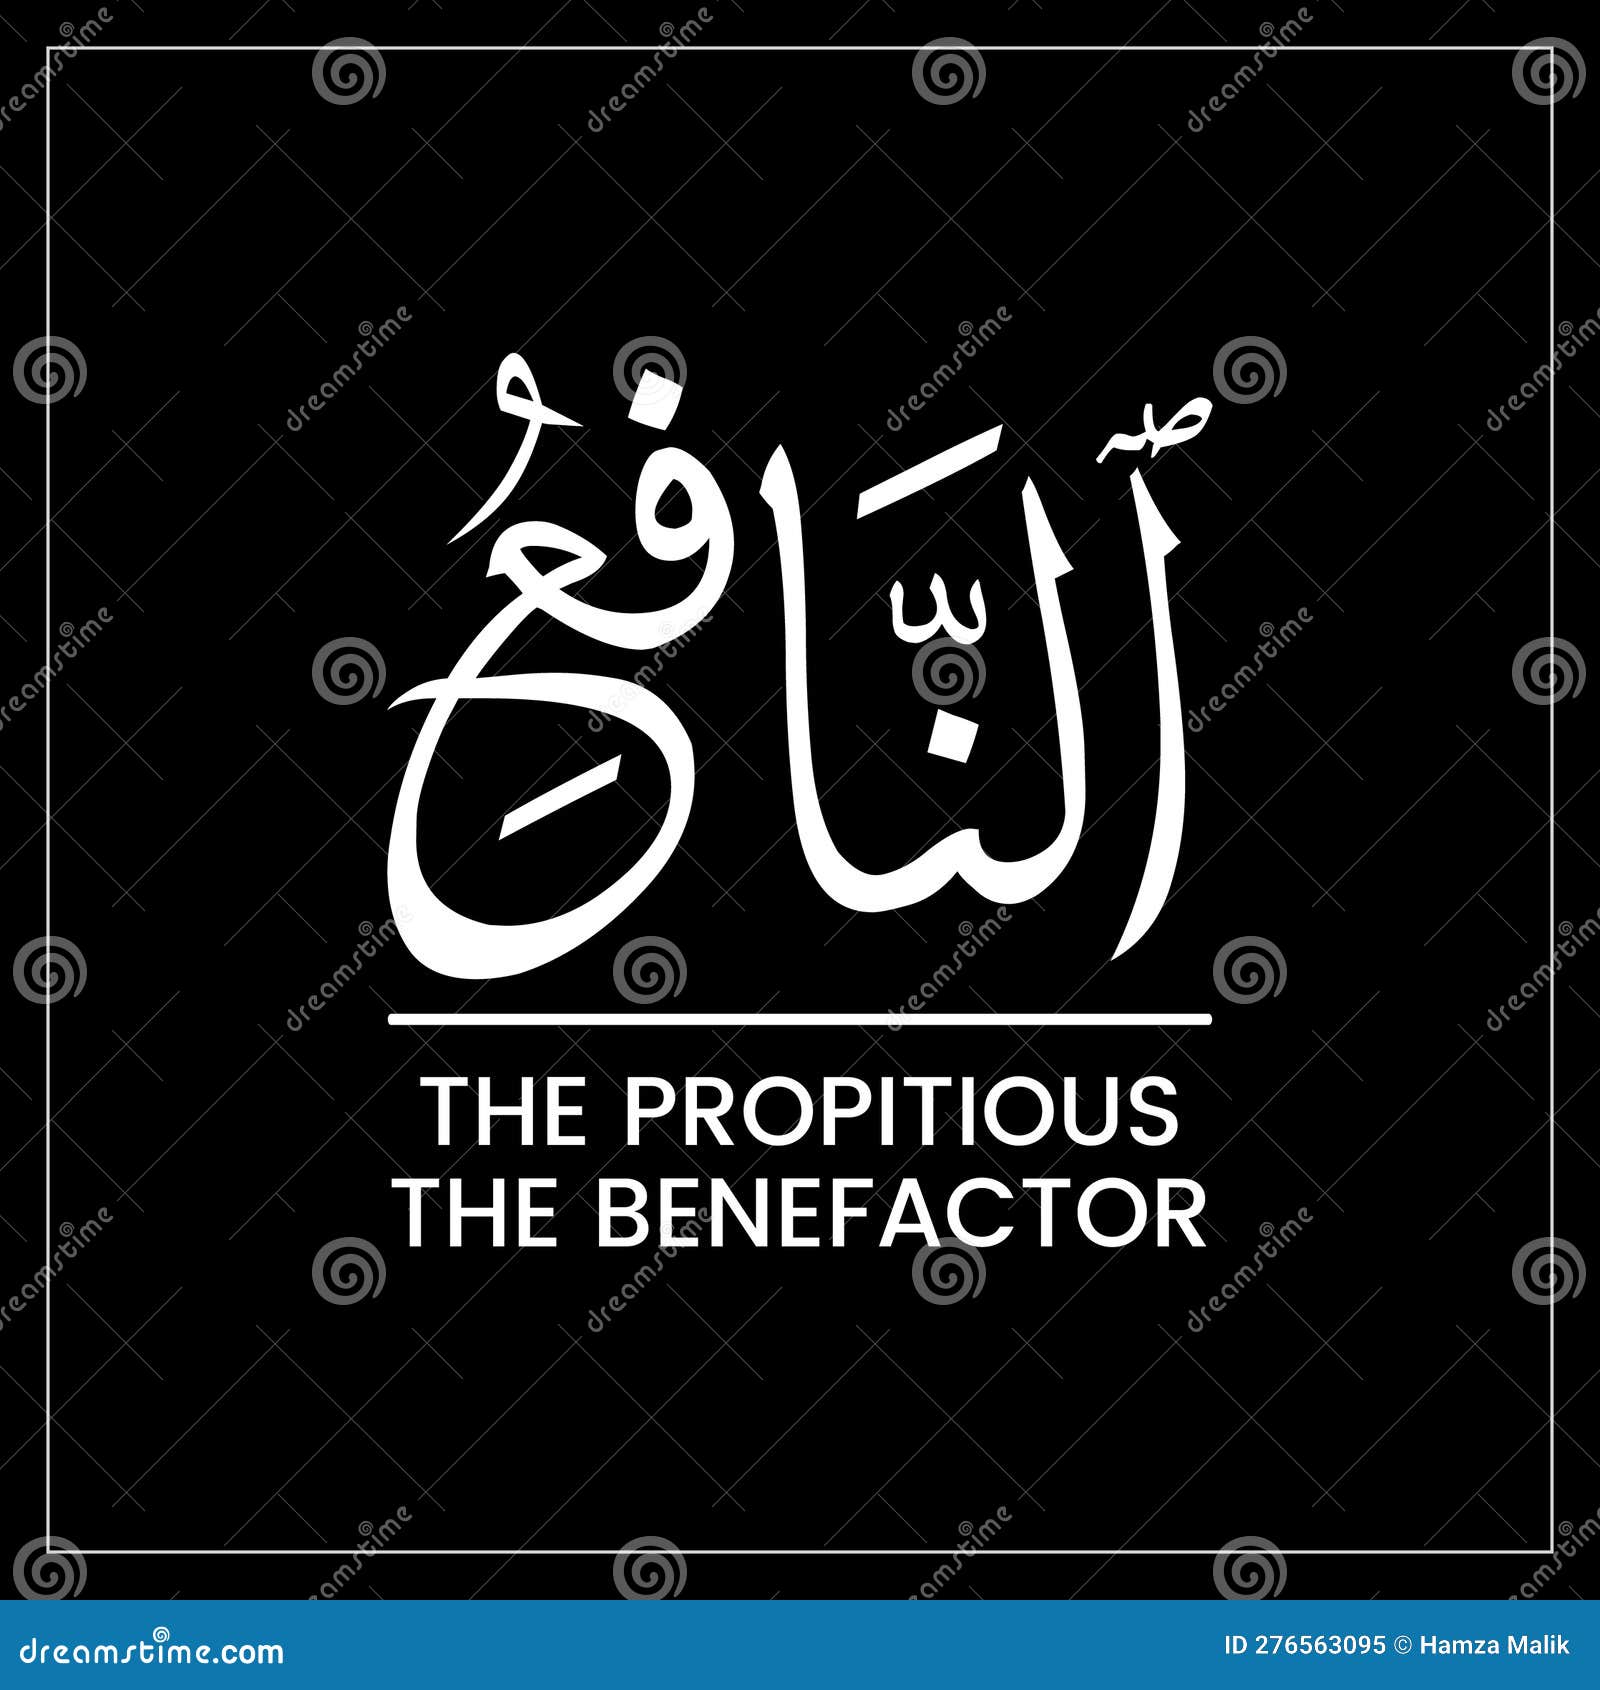 al nafi', al nafi, al nafiy, the propitious, the benefactor, names of allah